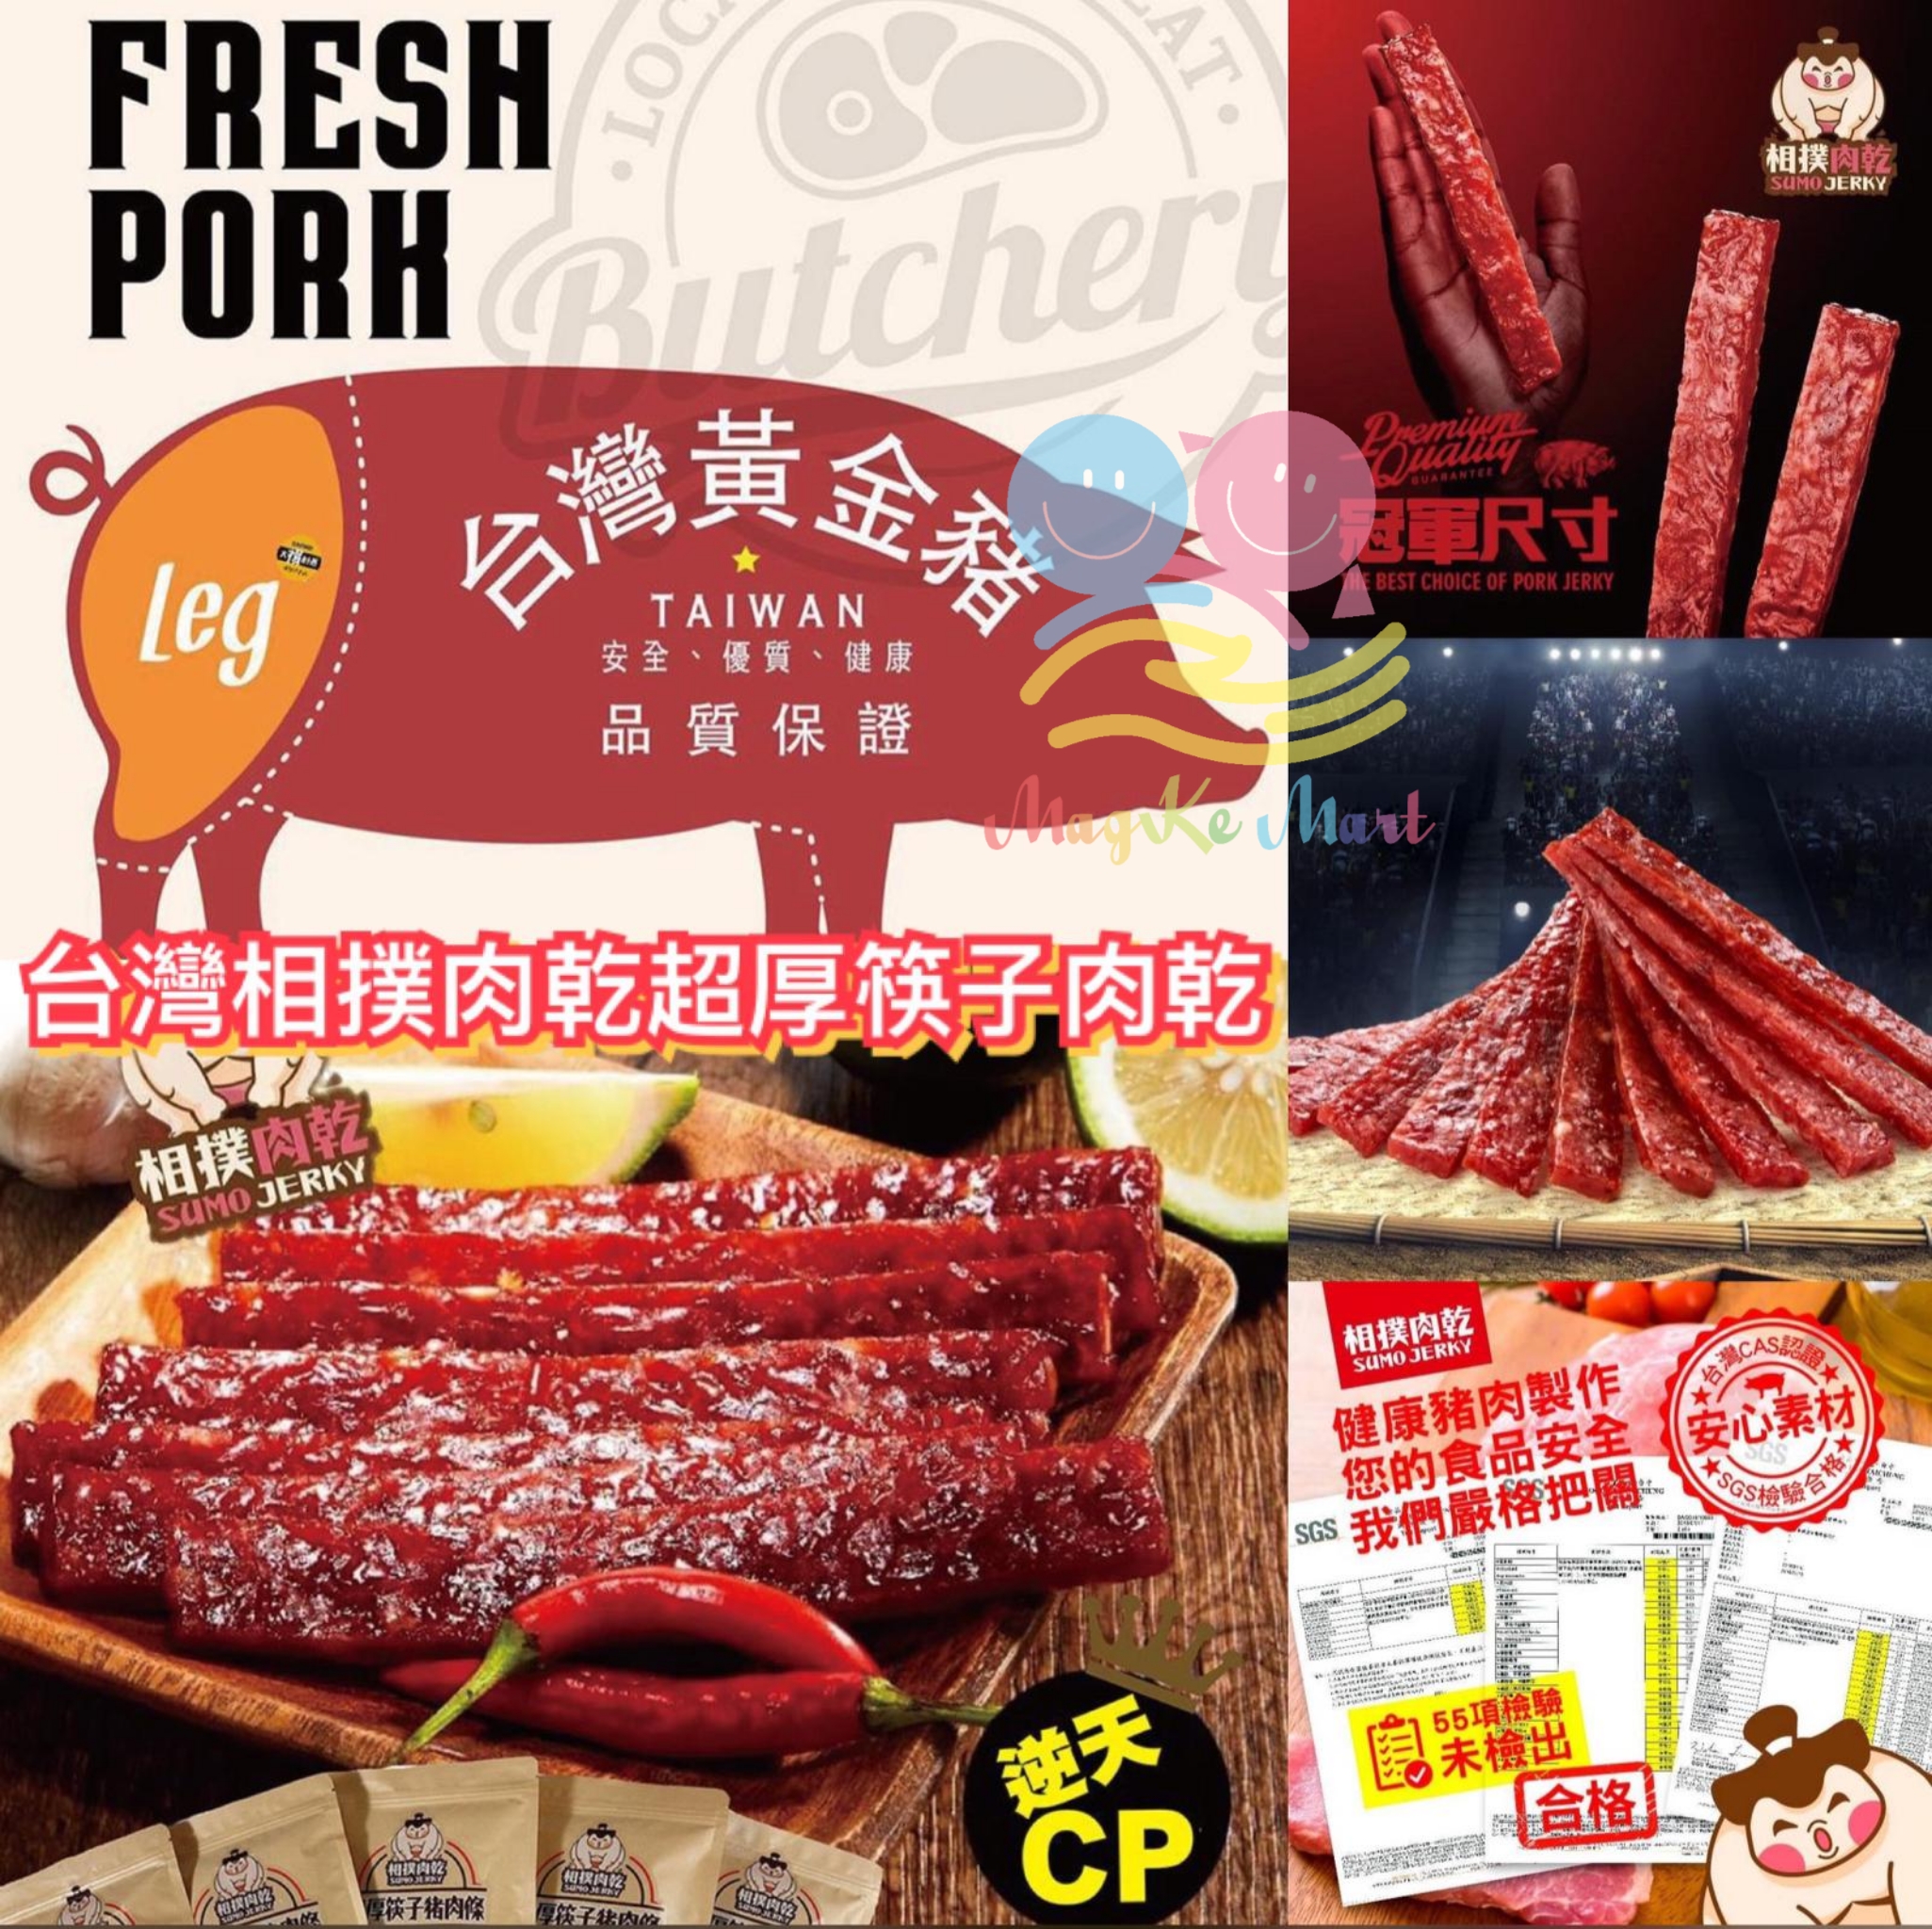 台灣相撲肉乾超厚筷子肉乾 240g (D) 蒜味